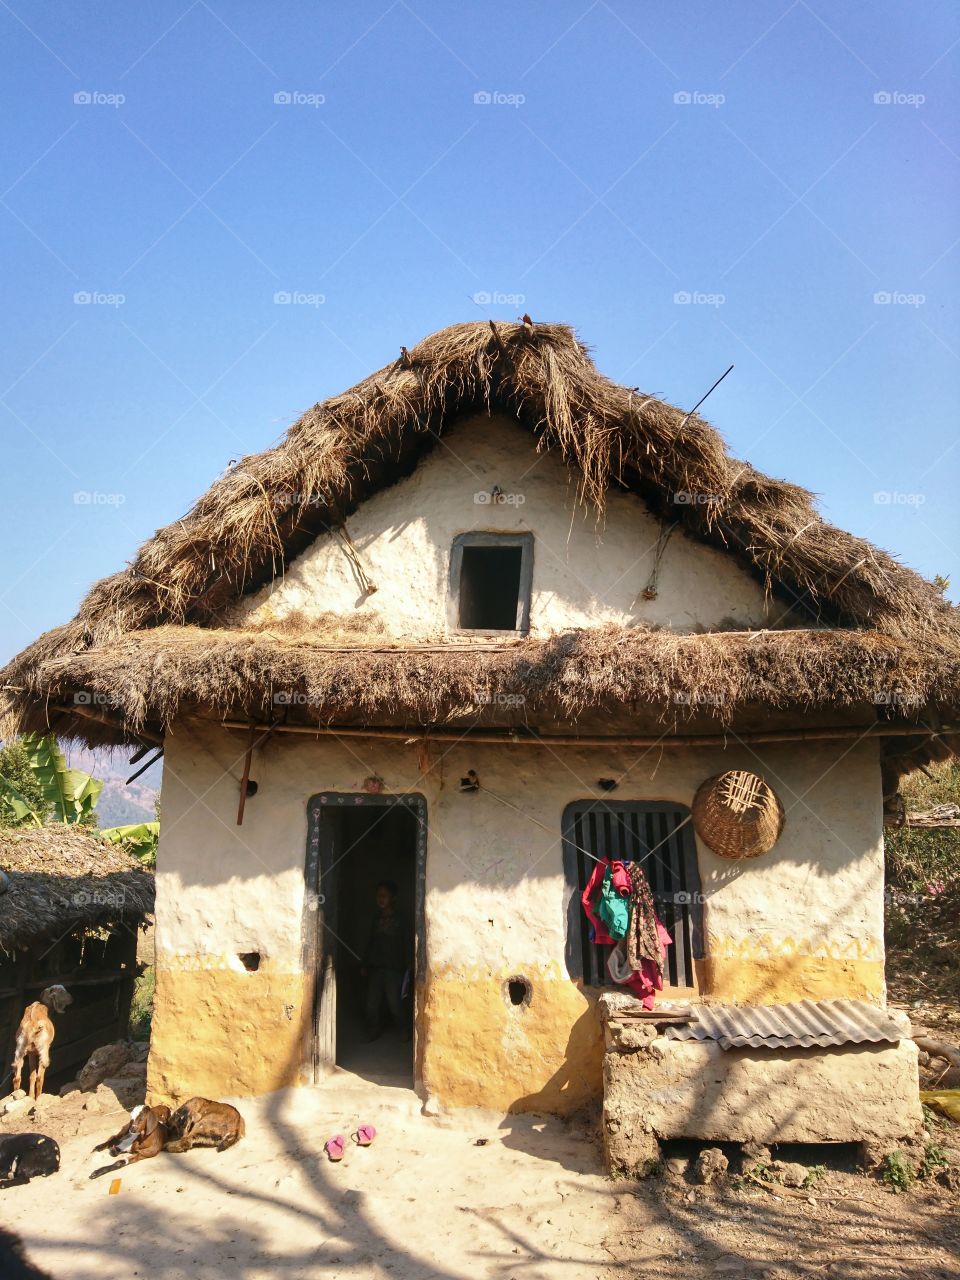 Rural house 🏡 in Nepal 🇳🇵